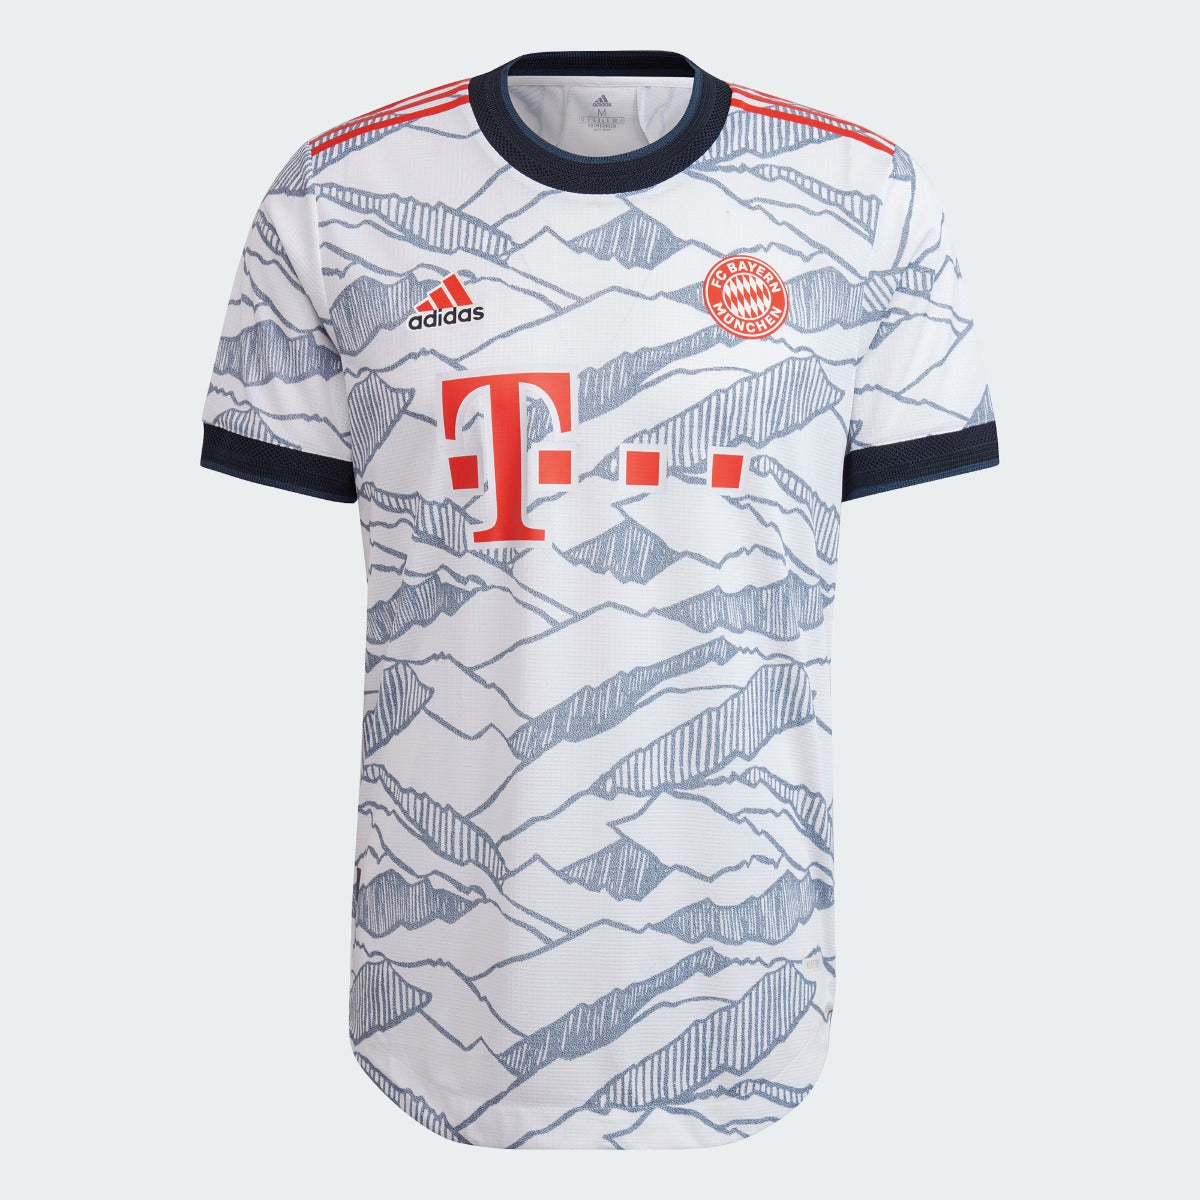 Adidas, Adidas 2021-22 Bayern Monaco - Terza maglia autentica - Bianco